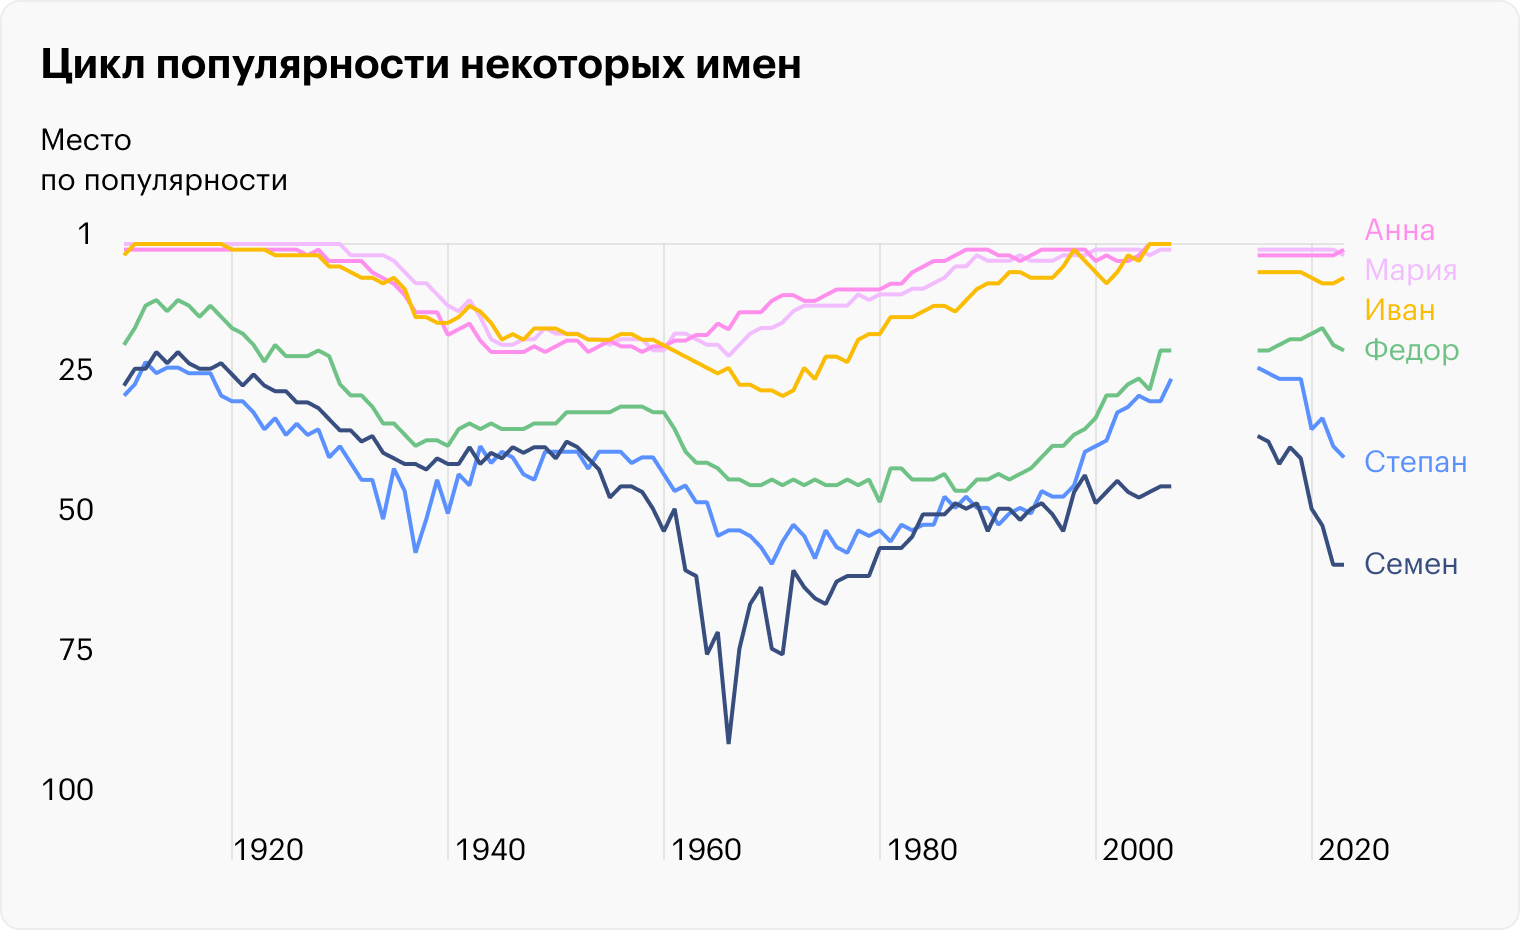 Источники: портал открытых данных Москвы, Russian names popularity in 20 century